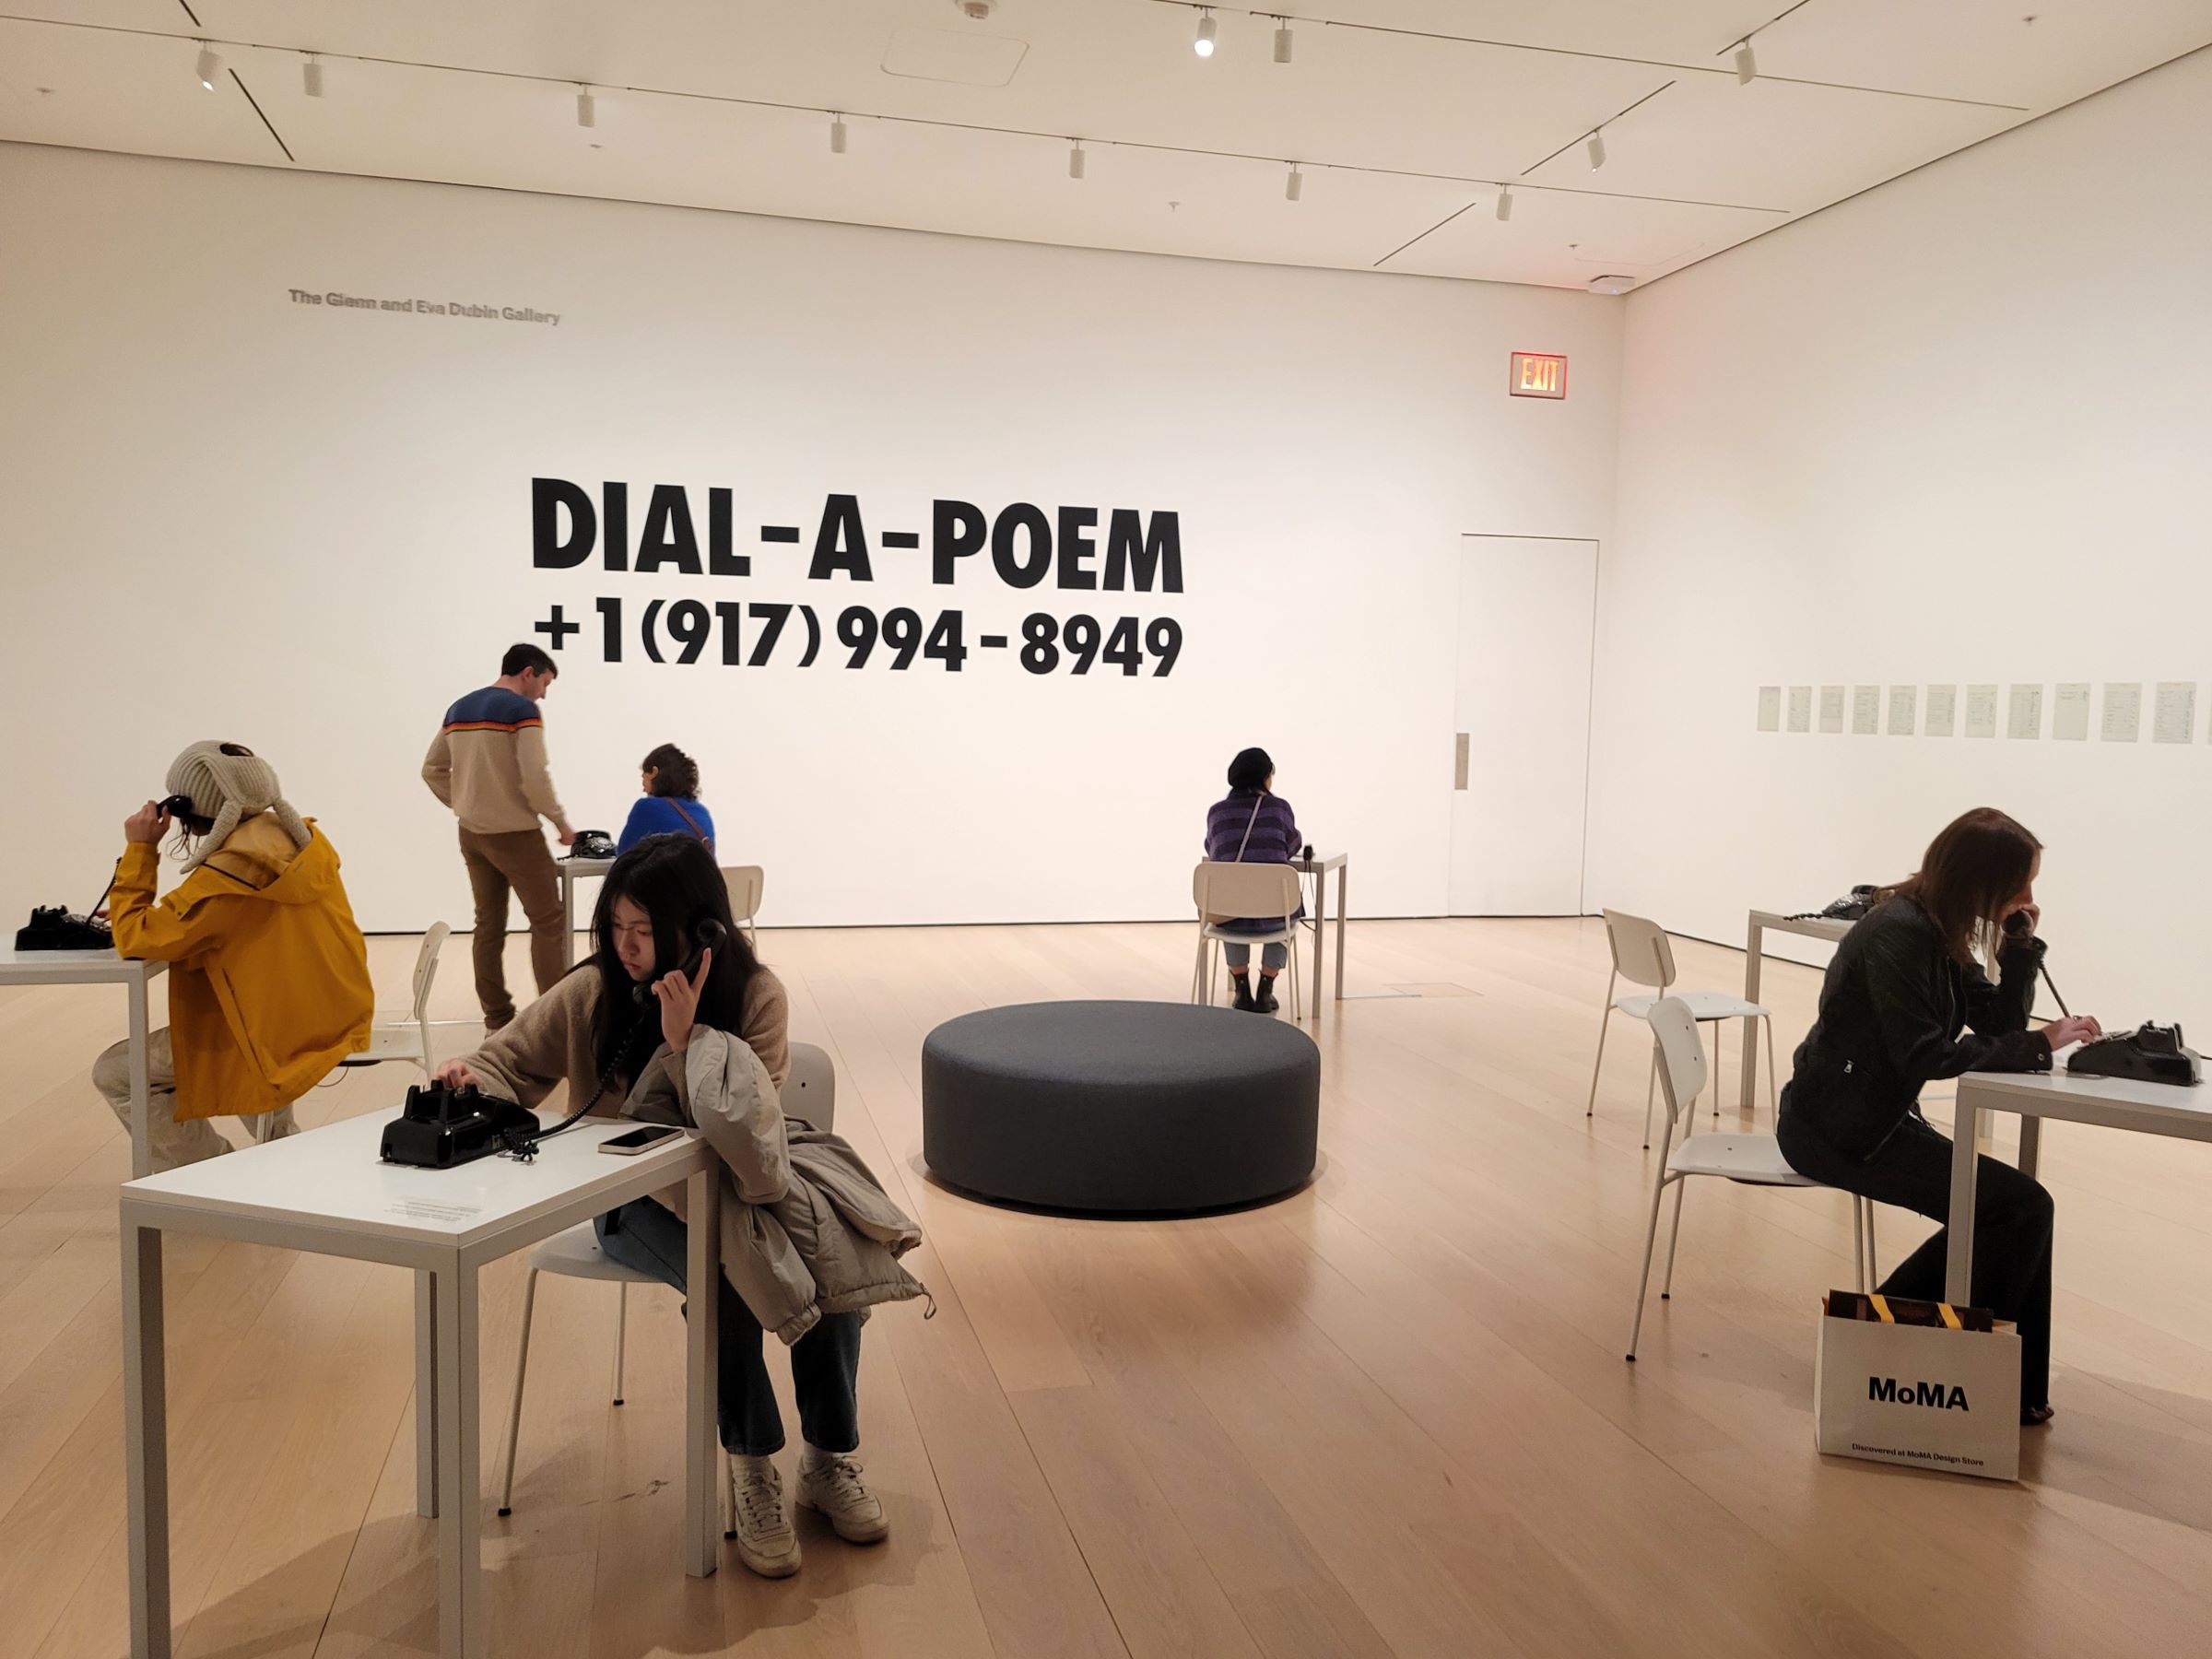 딸의 직장이 잘 있는지 확인하고, 뉴욕 현대미술관(Museum of Modern Art) - 모마(MoMA) 구경하기